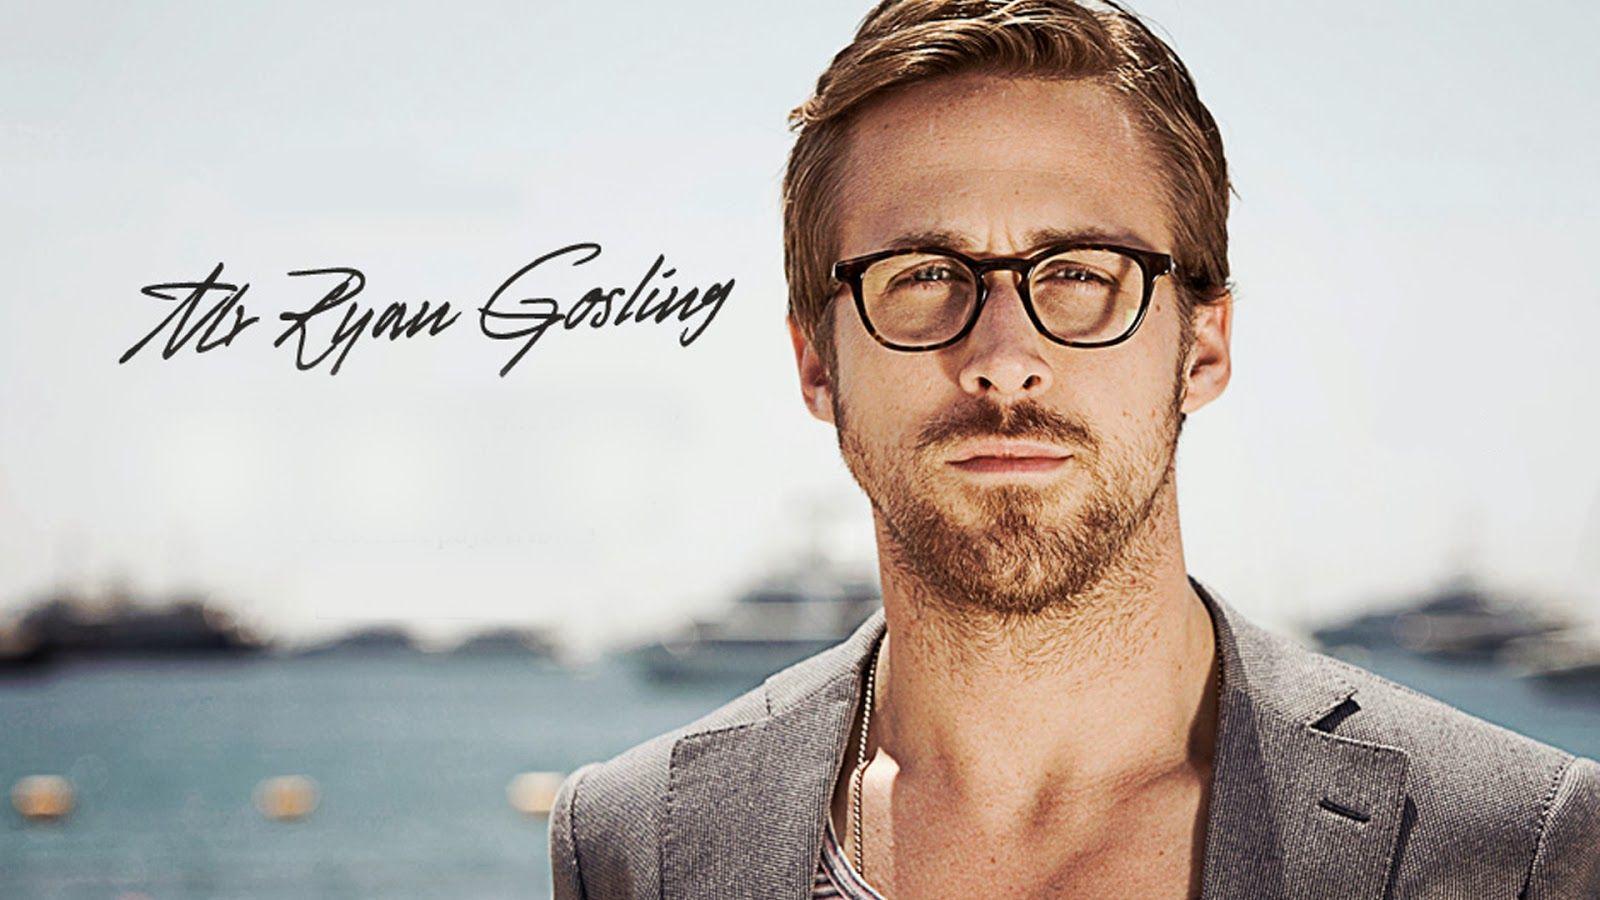 Ryan Gosling HD Wallpaper, Background Image